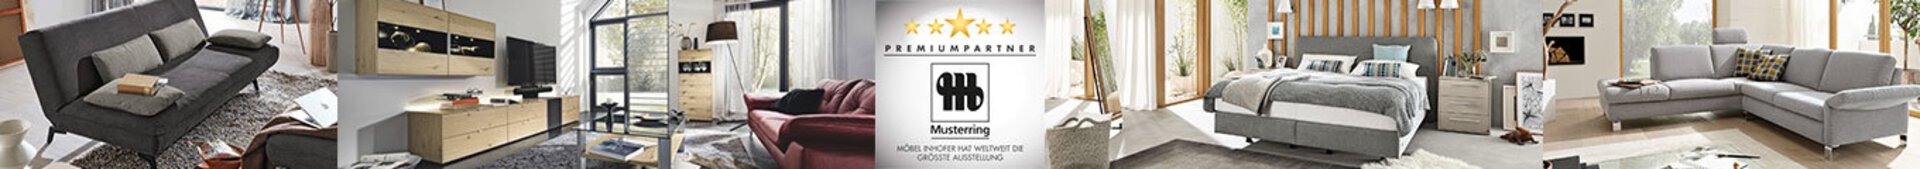 Bannerbild der Marke Musterring. Premiumpartner bei Möbel Inhofer.